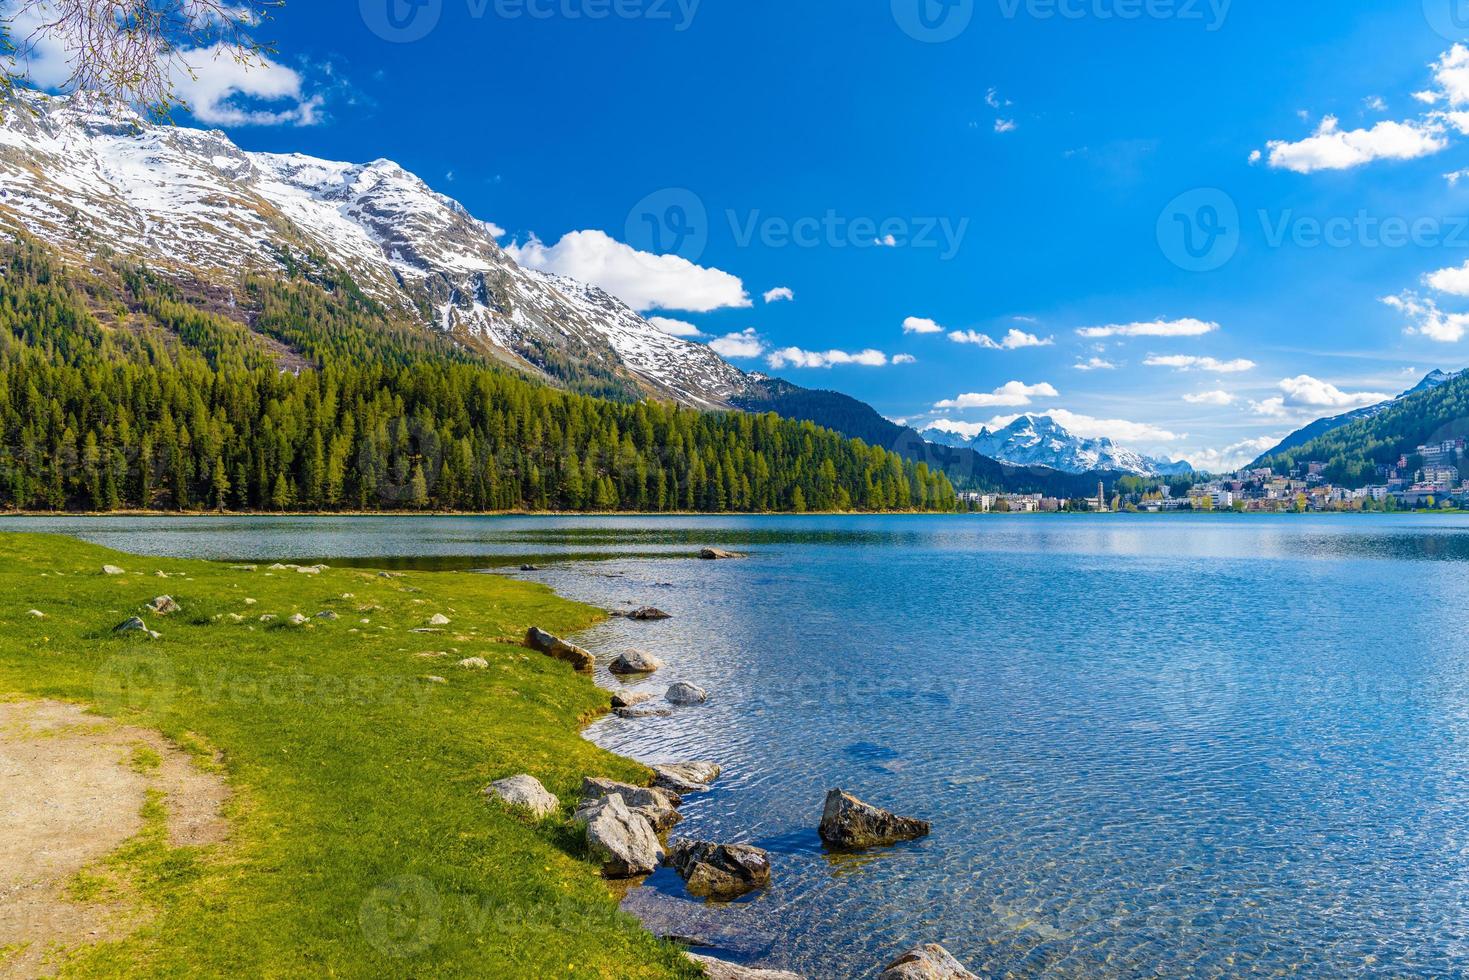 lago blu cristallino st. moritz, sankt moritz, maloja, grigioni, svizzera foto